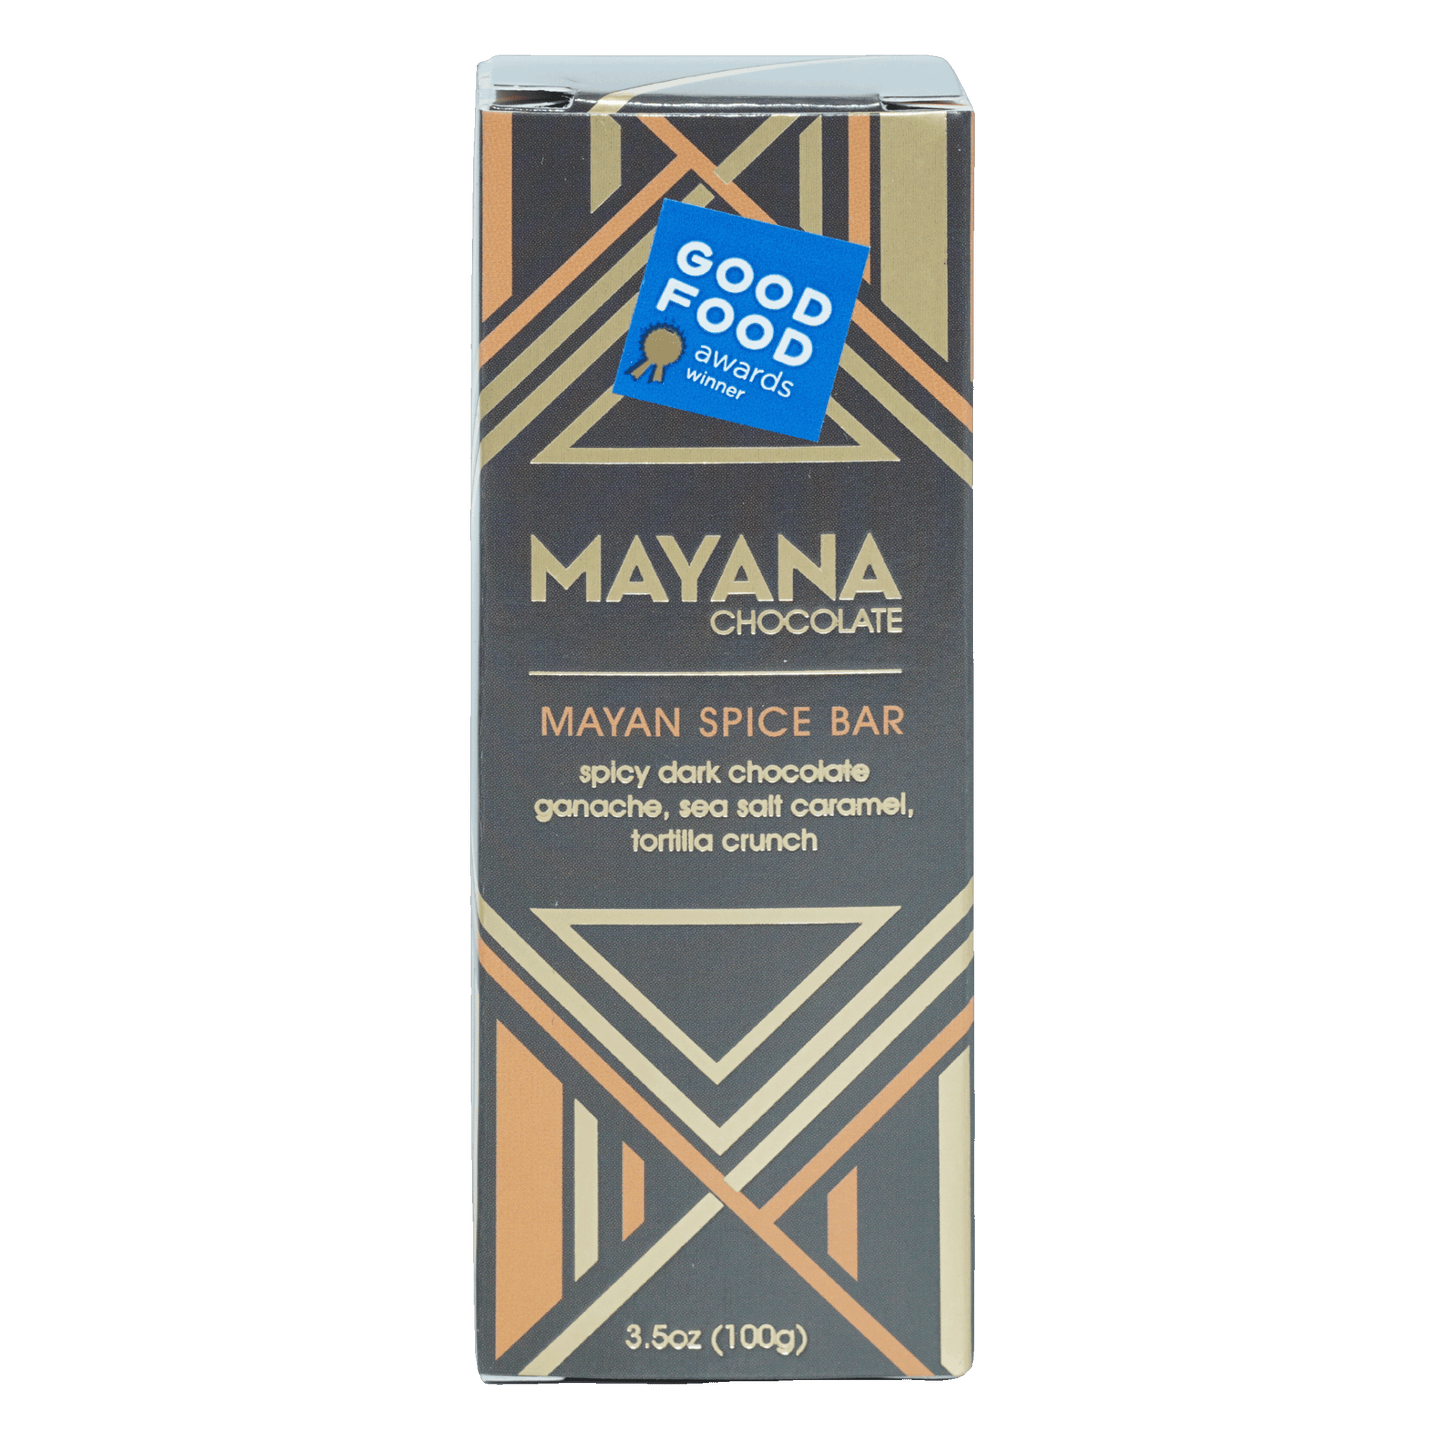 Mayana Chocolate Mayan Spice Bar